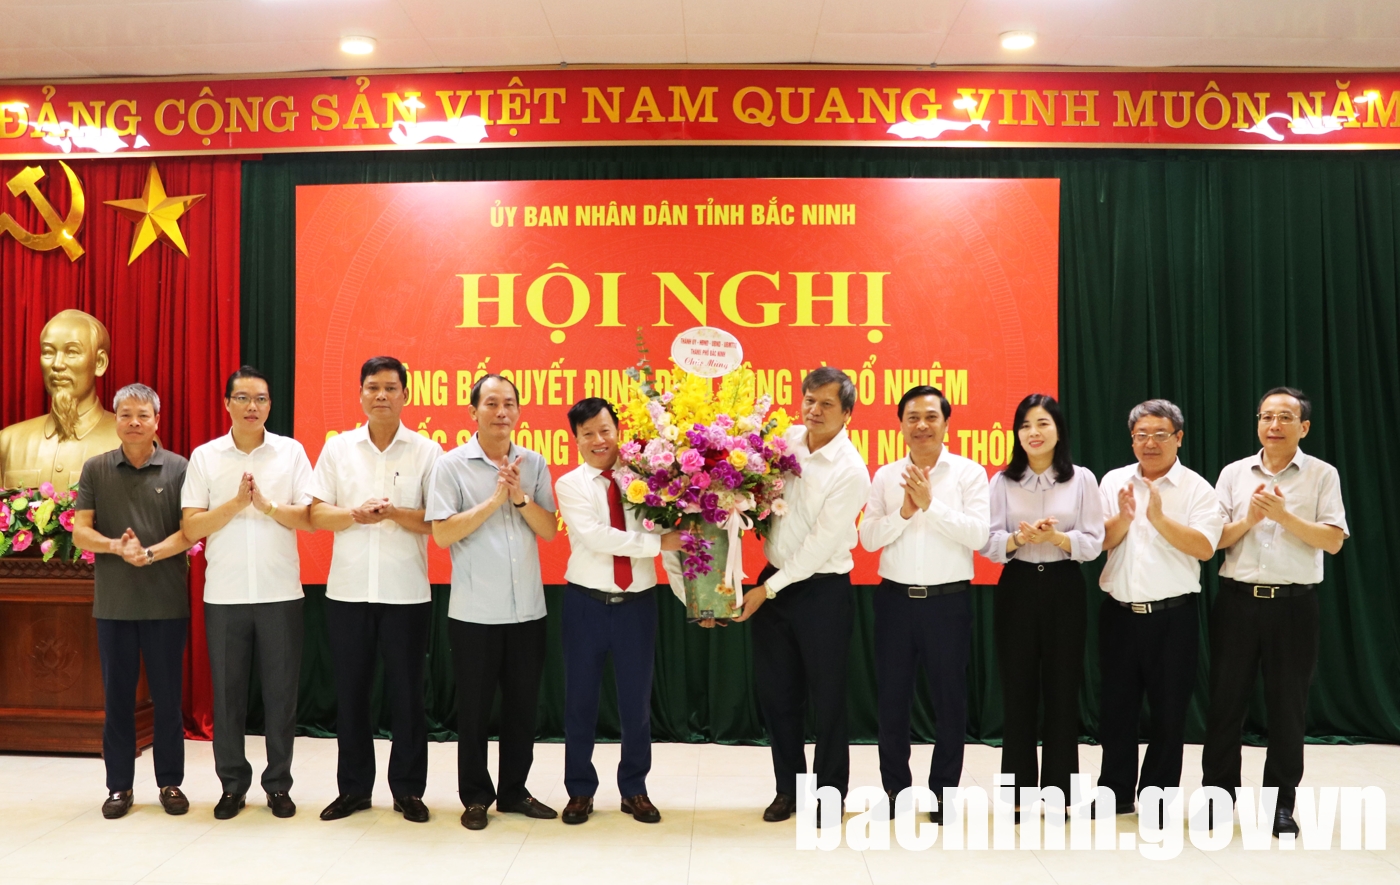 Chủ tịch UBND thành phố Bắc Ninh Nguyễn Song Hà được bổ nhiệm làm Giám đốc Sở NNPTNT tỉnh Bắc Ninh- Ảnh 2.